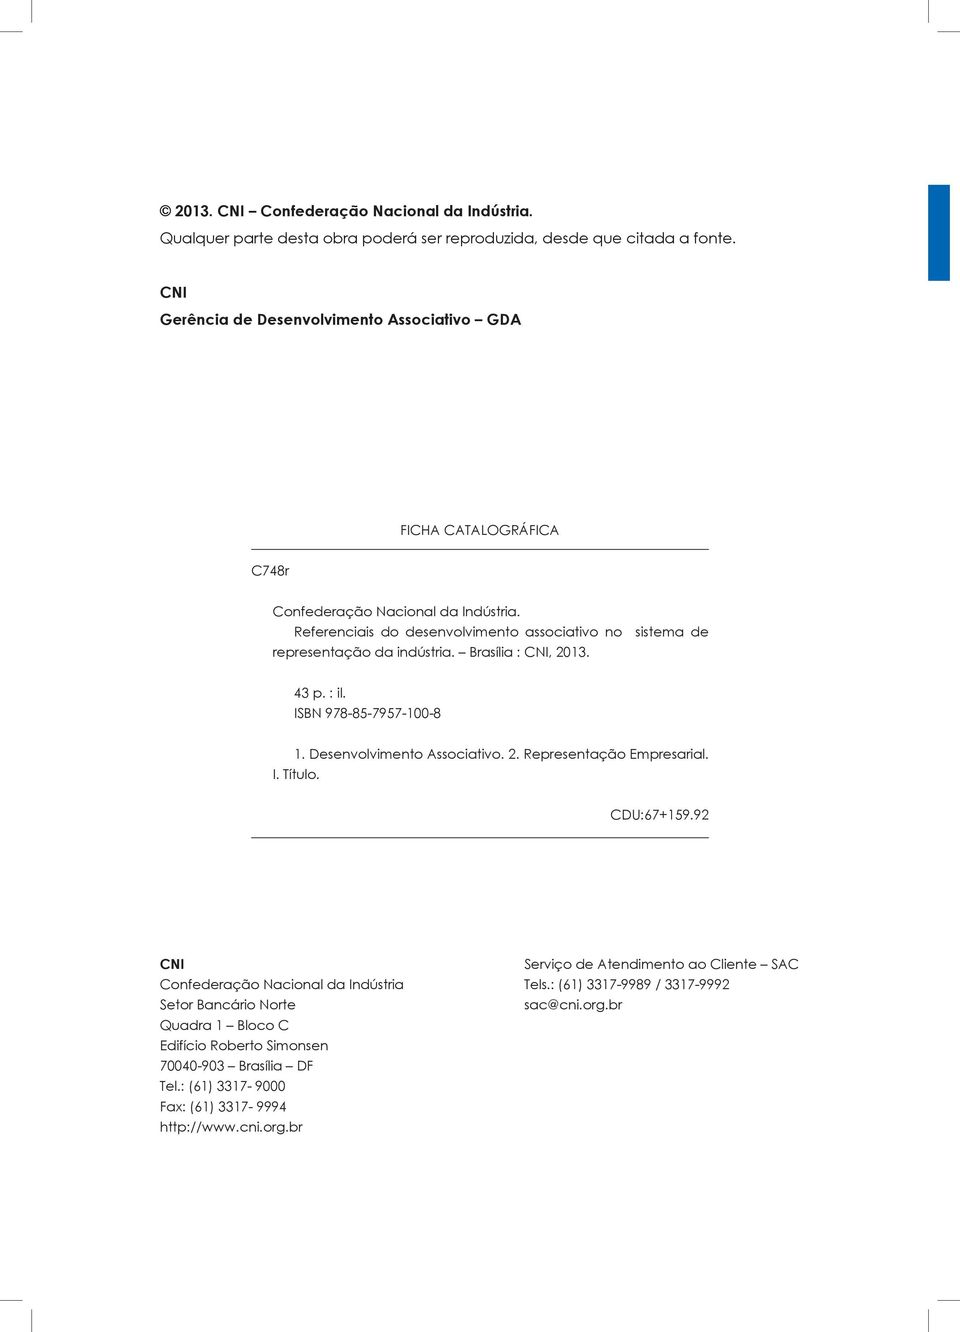 Referenciais do desenvolvimento associativo no sistema de representação da indústria. Brasília : CNI, 2013. 43 p. : il. ISBN 978-85-7957-100-8 1. Desenvolvimento Associativo. 2. Representação Empresarial.